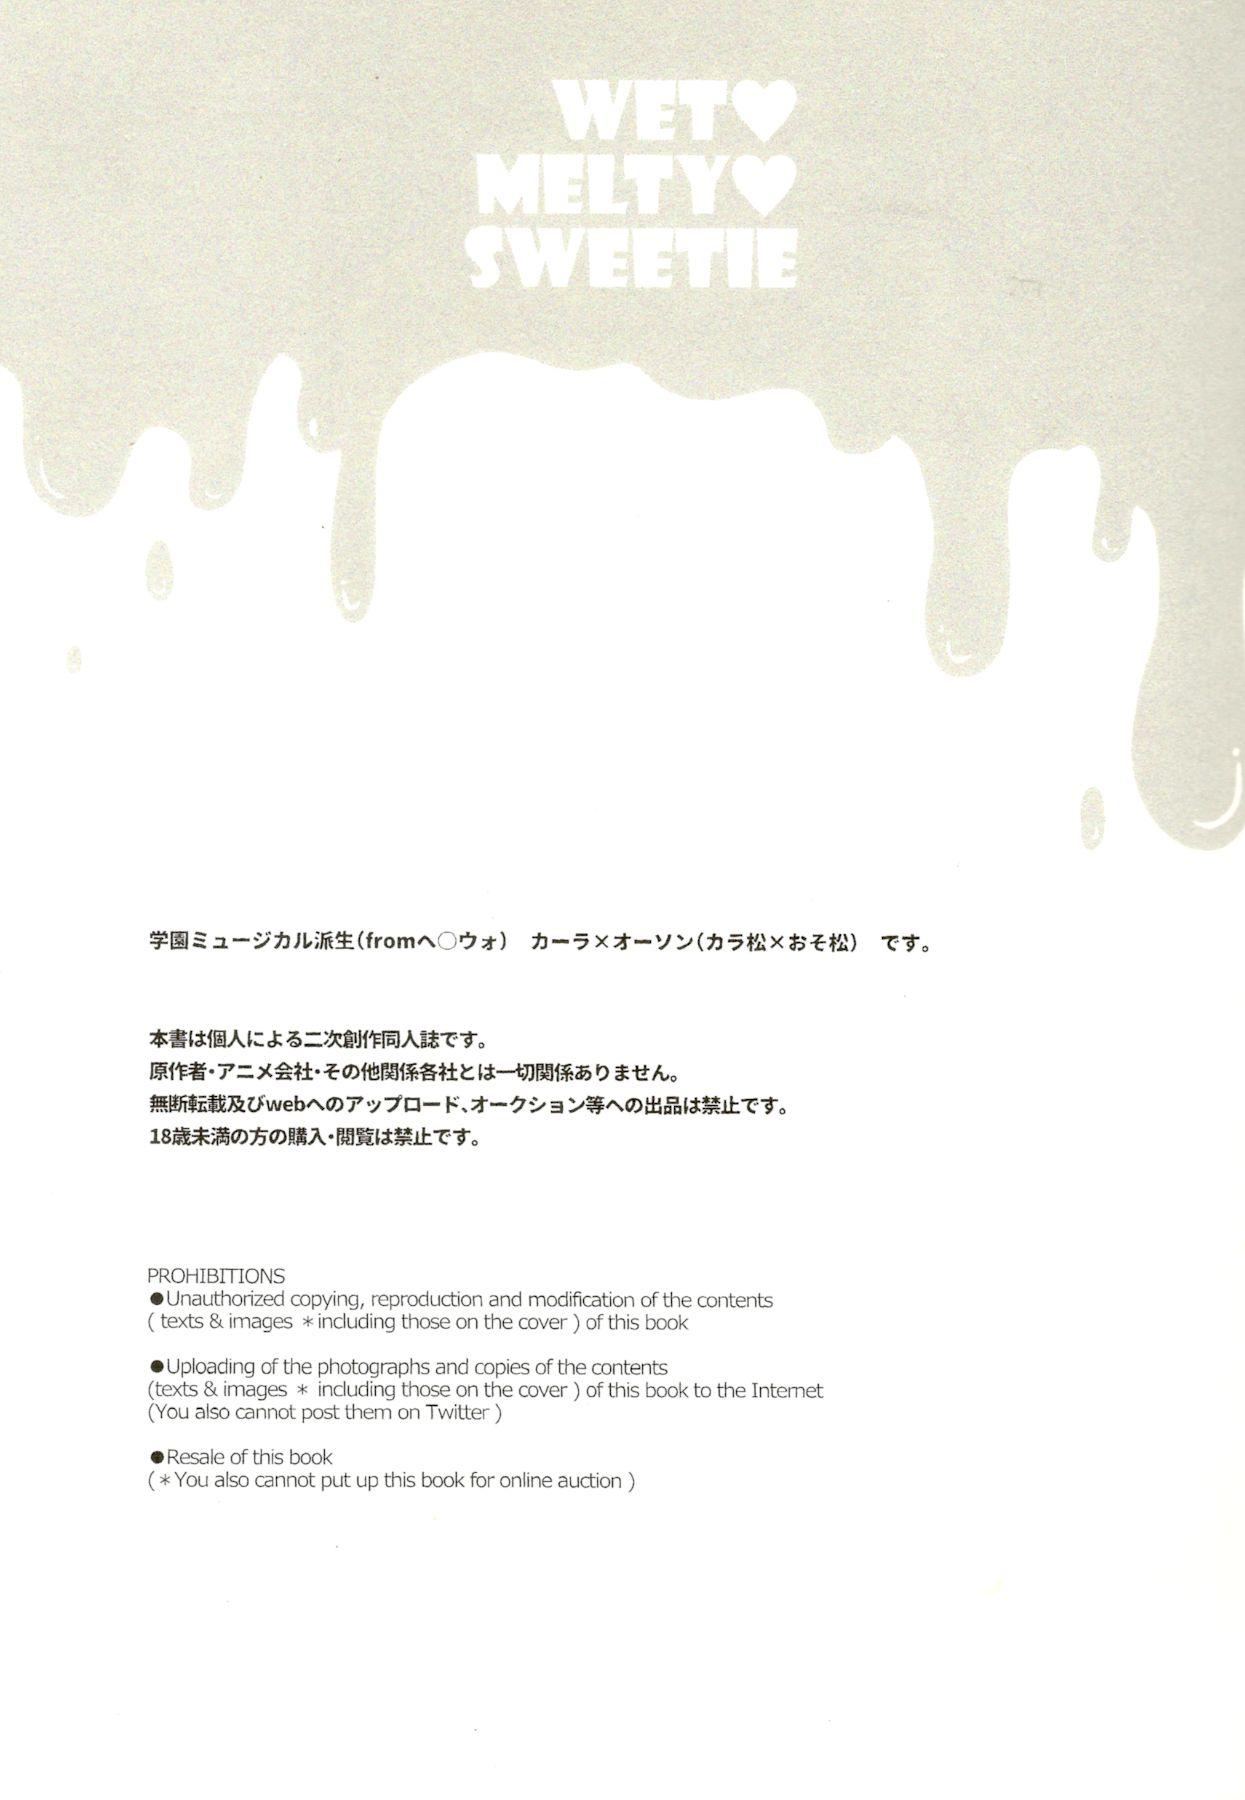 Crossdresser wet melty sweetie - Osomatsu-san Muscle - Page 2